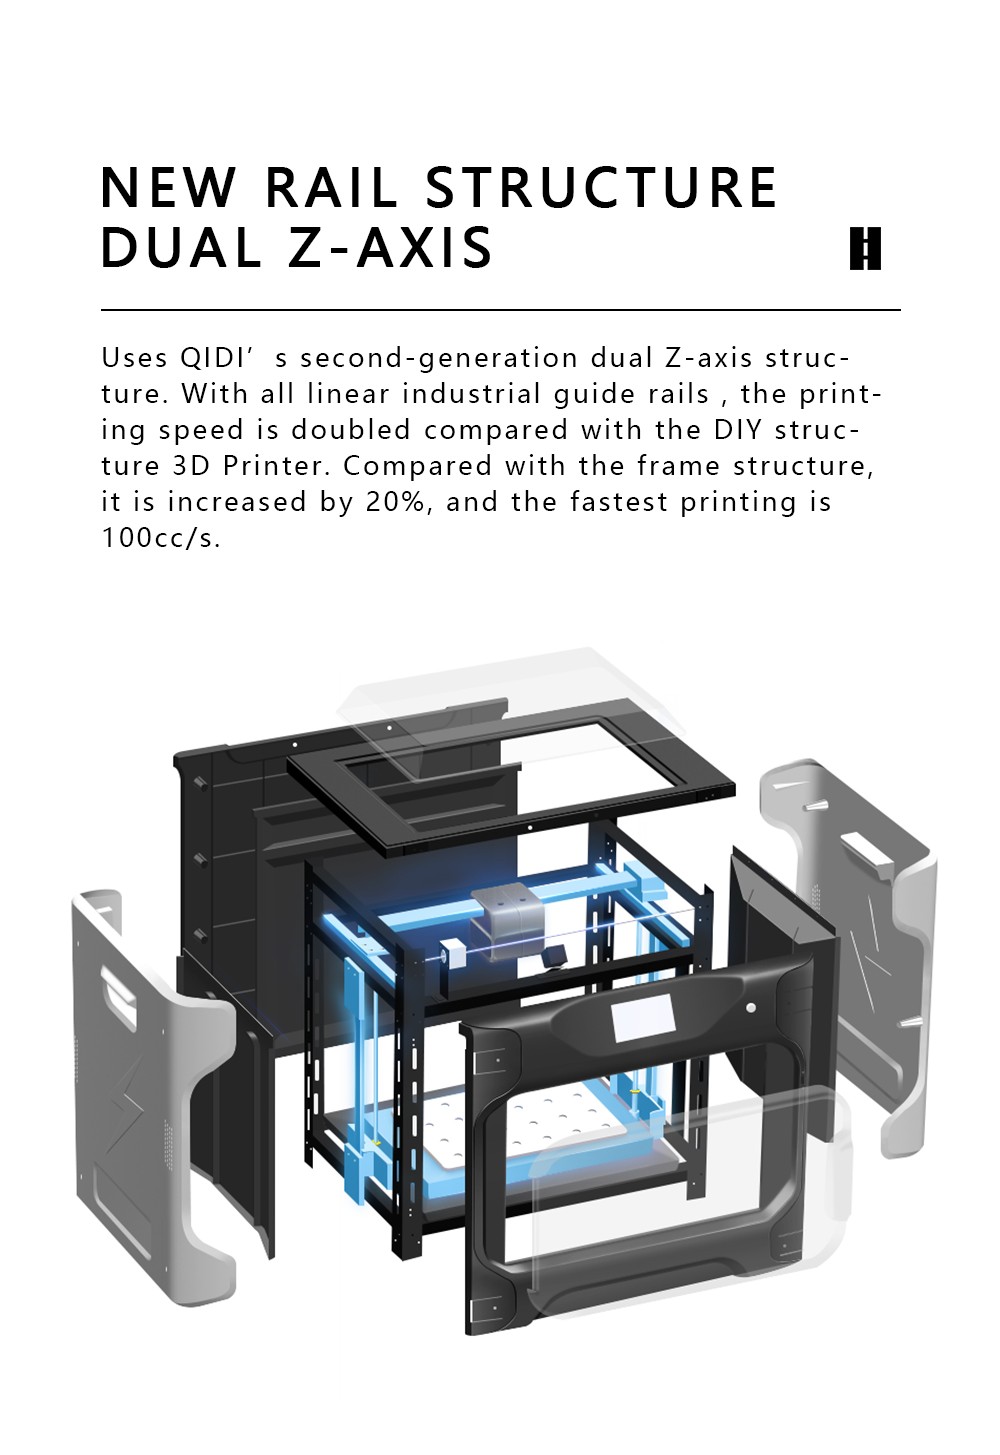 QIDI-TECHNOLOGIE i Snelle 3D-printer Dual Extruder Snel afdrukken 360x250x320mm Afdrukformaat